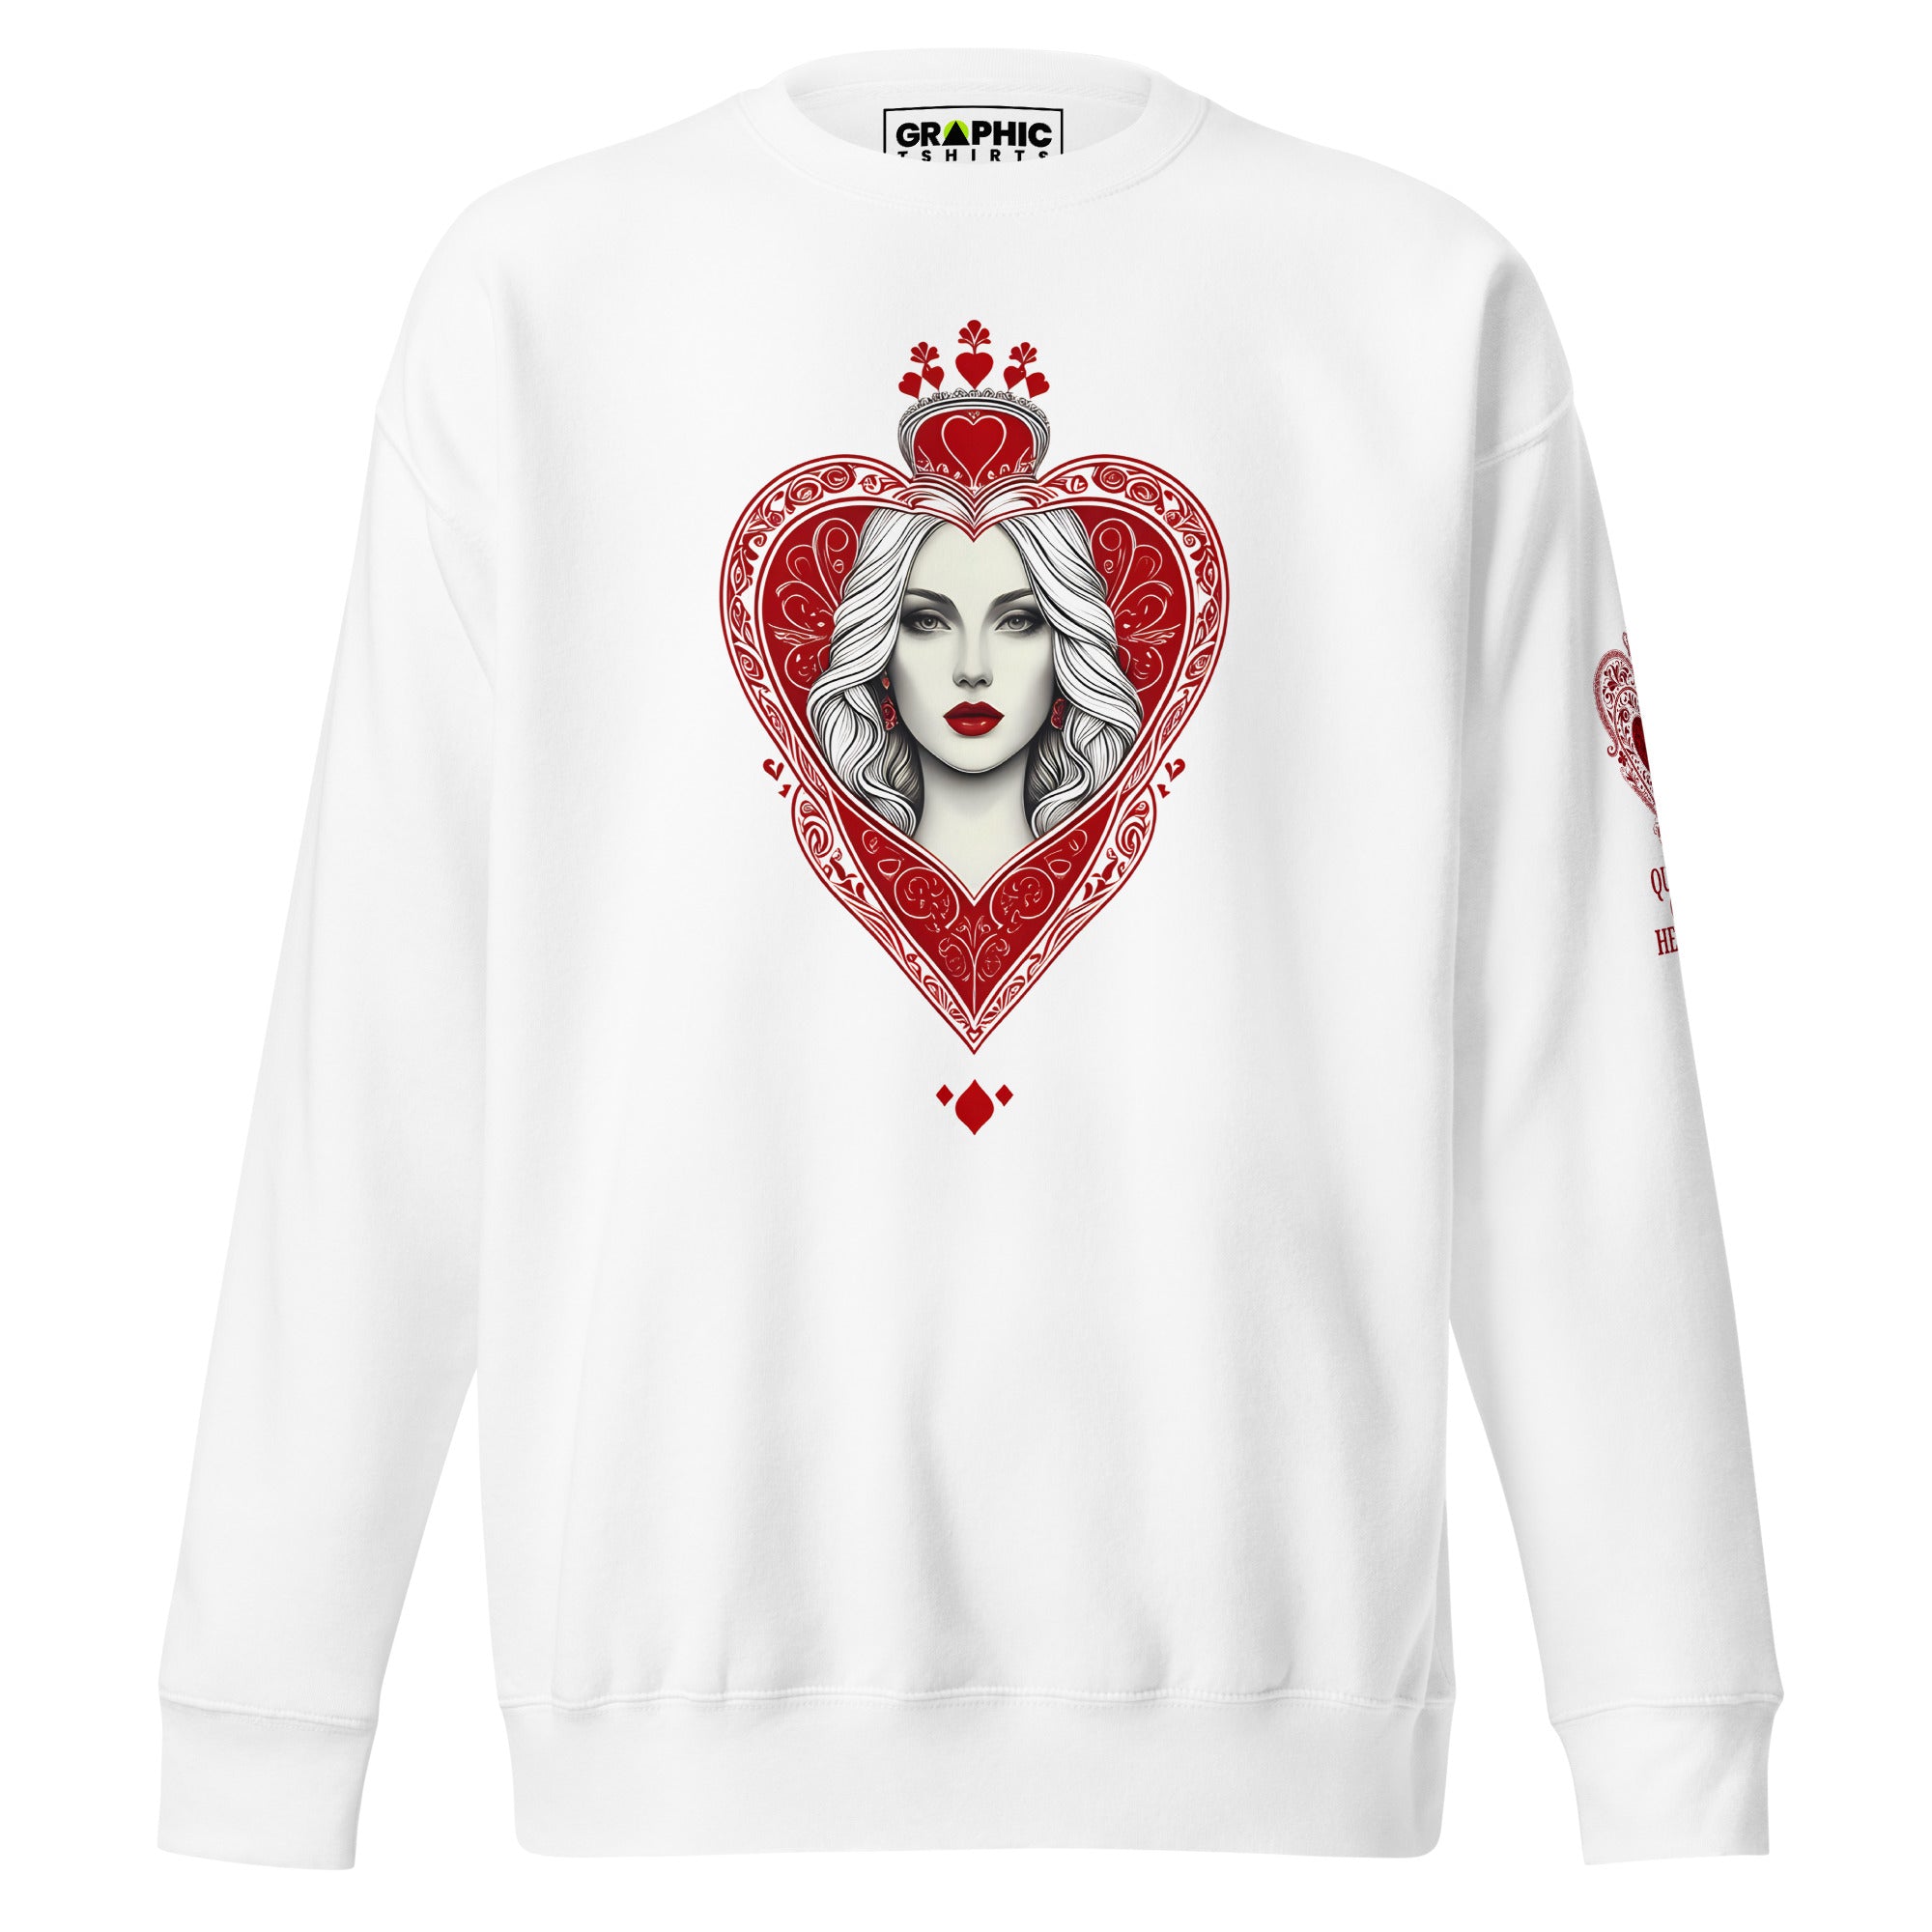 Unisex Premium Sweatshirt - Queen Of Hearts Series v.8